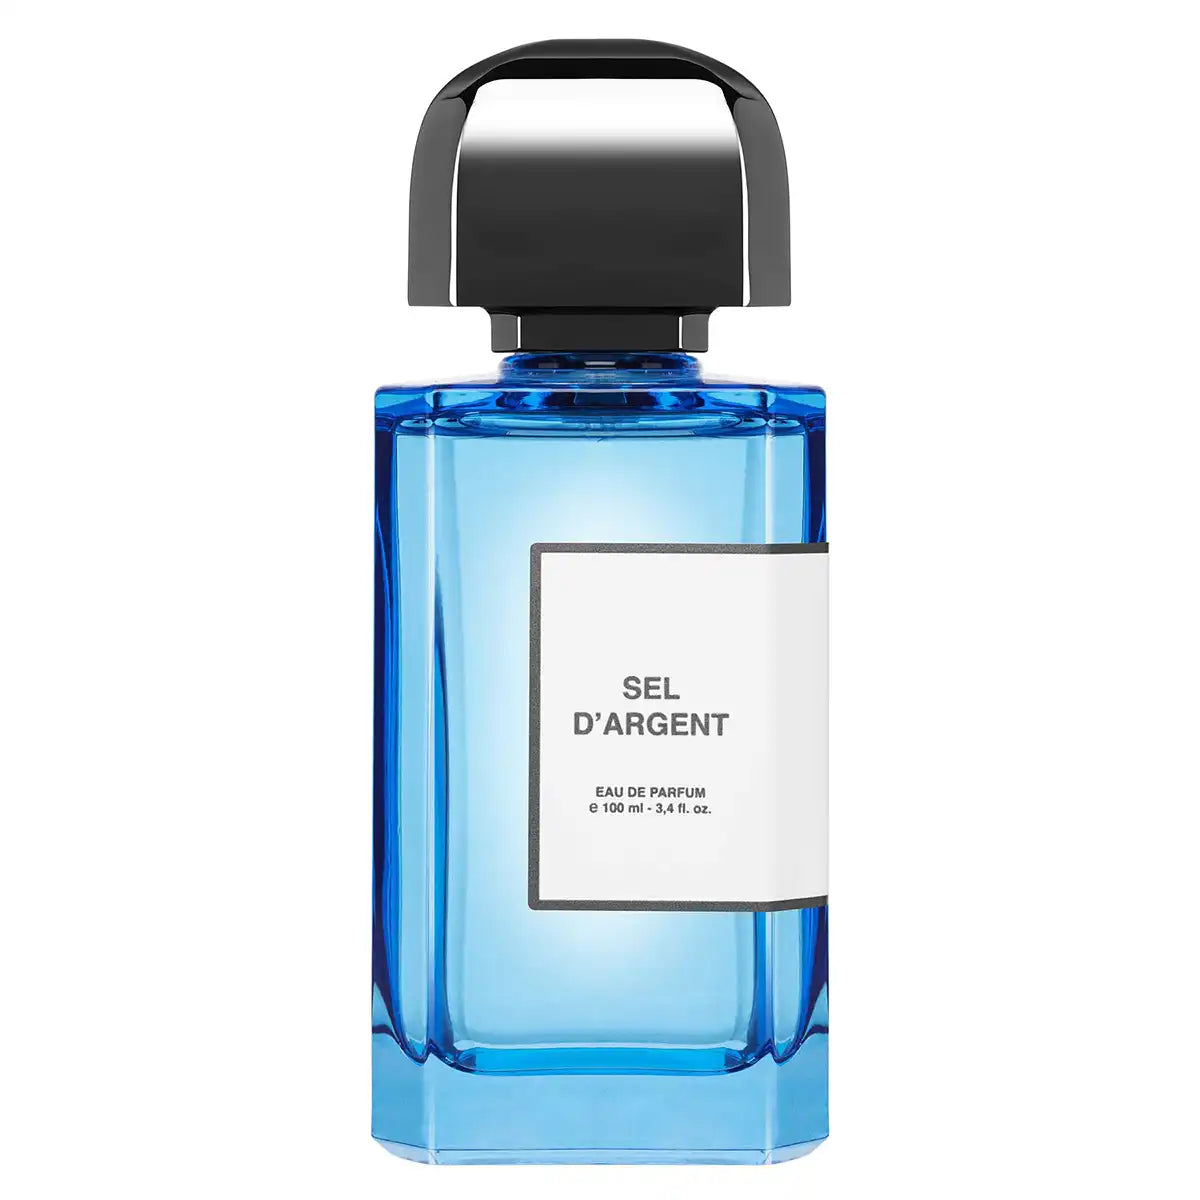 BDK Parfums Sel d’Argent Eau de Parfum 100ml